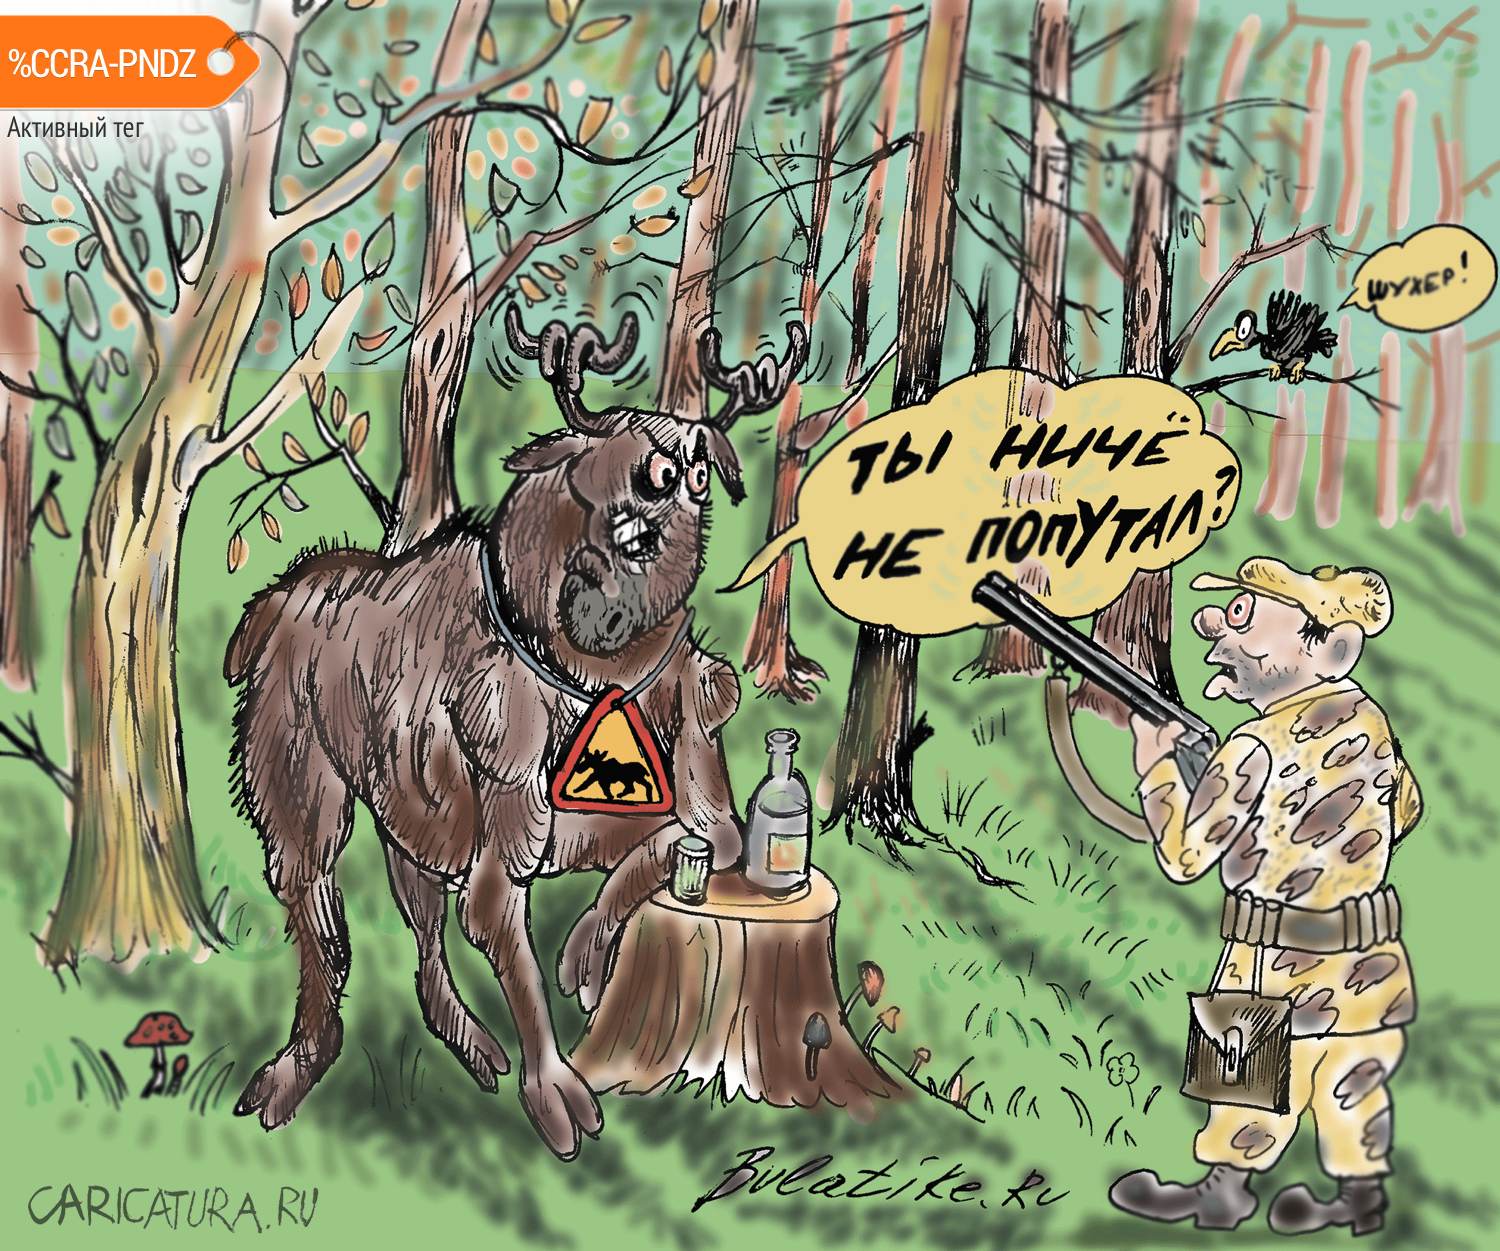 Карикатура "Осторожно! Лось", Булат Ирсаев